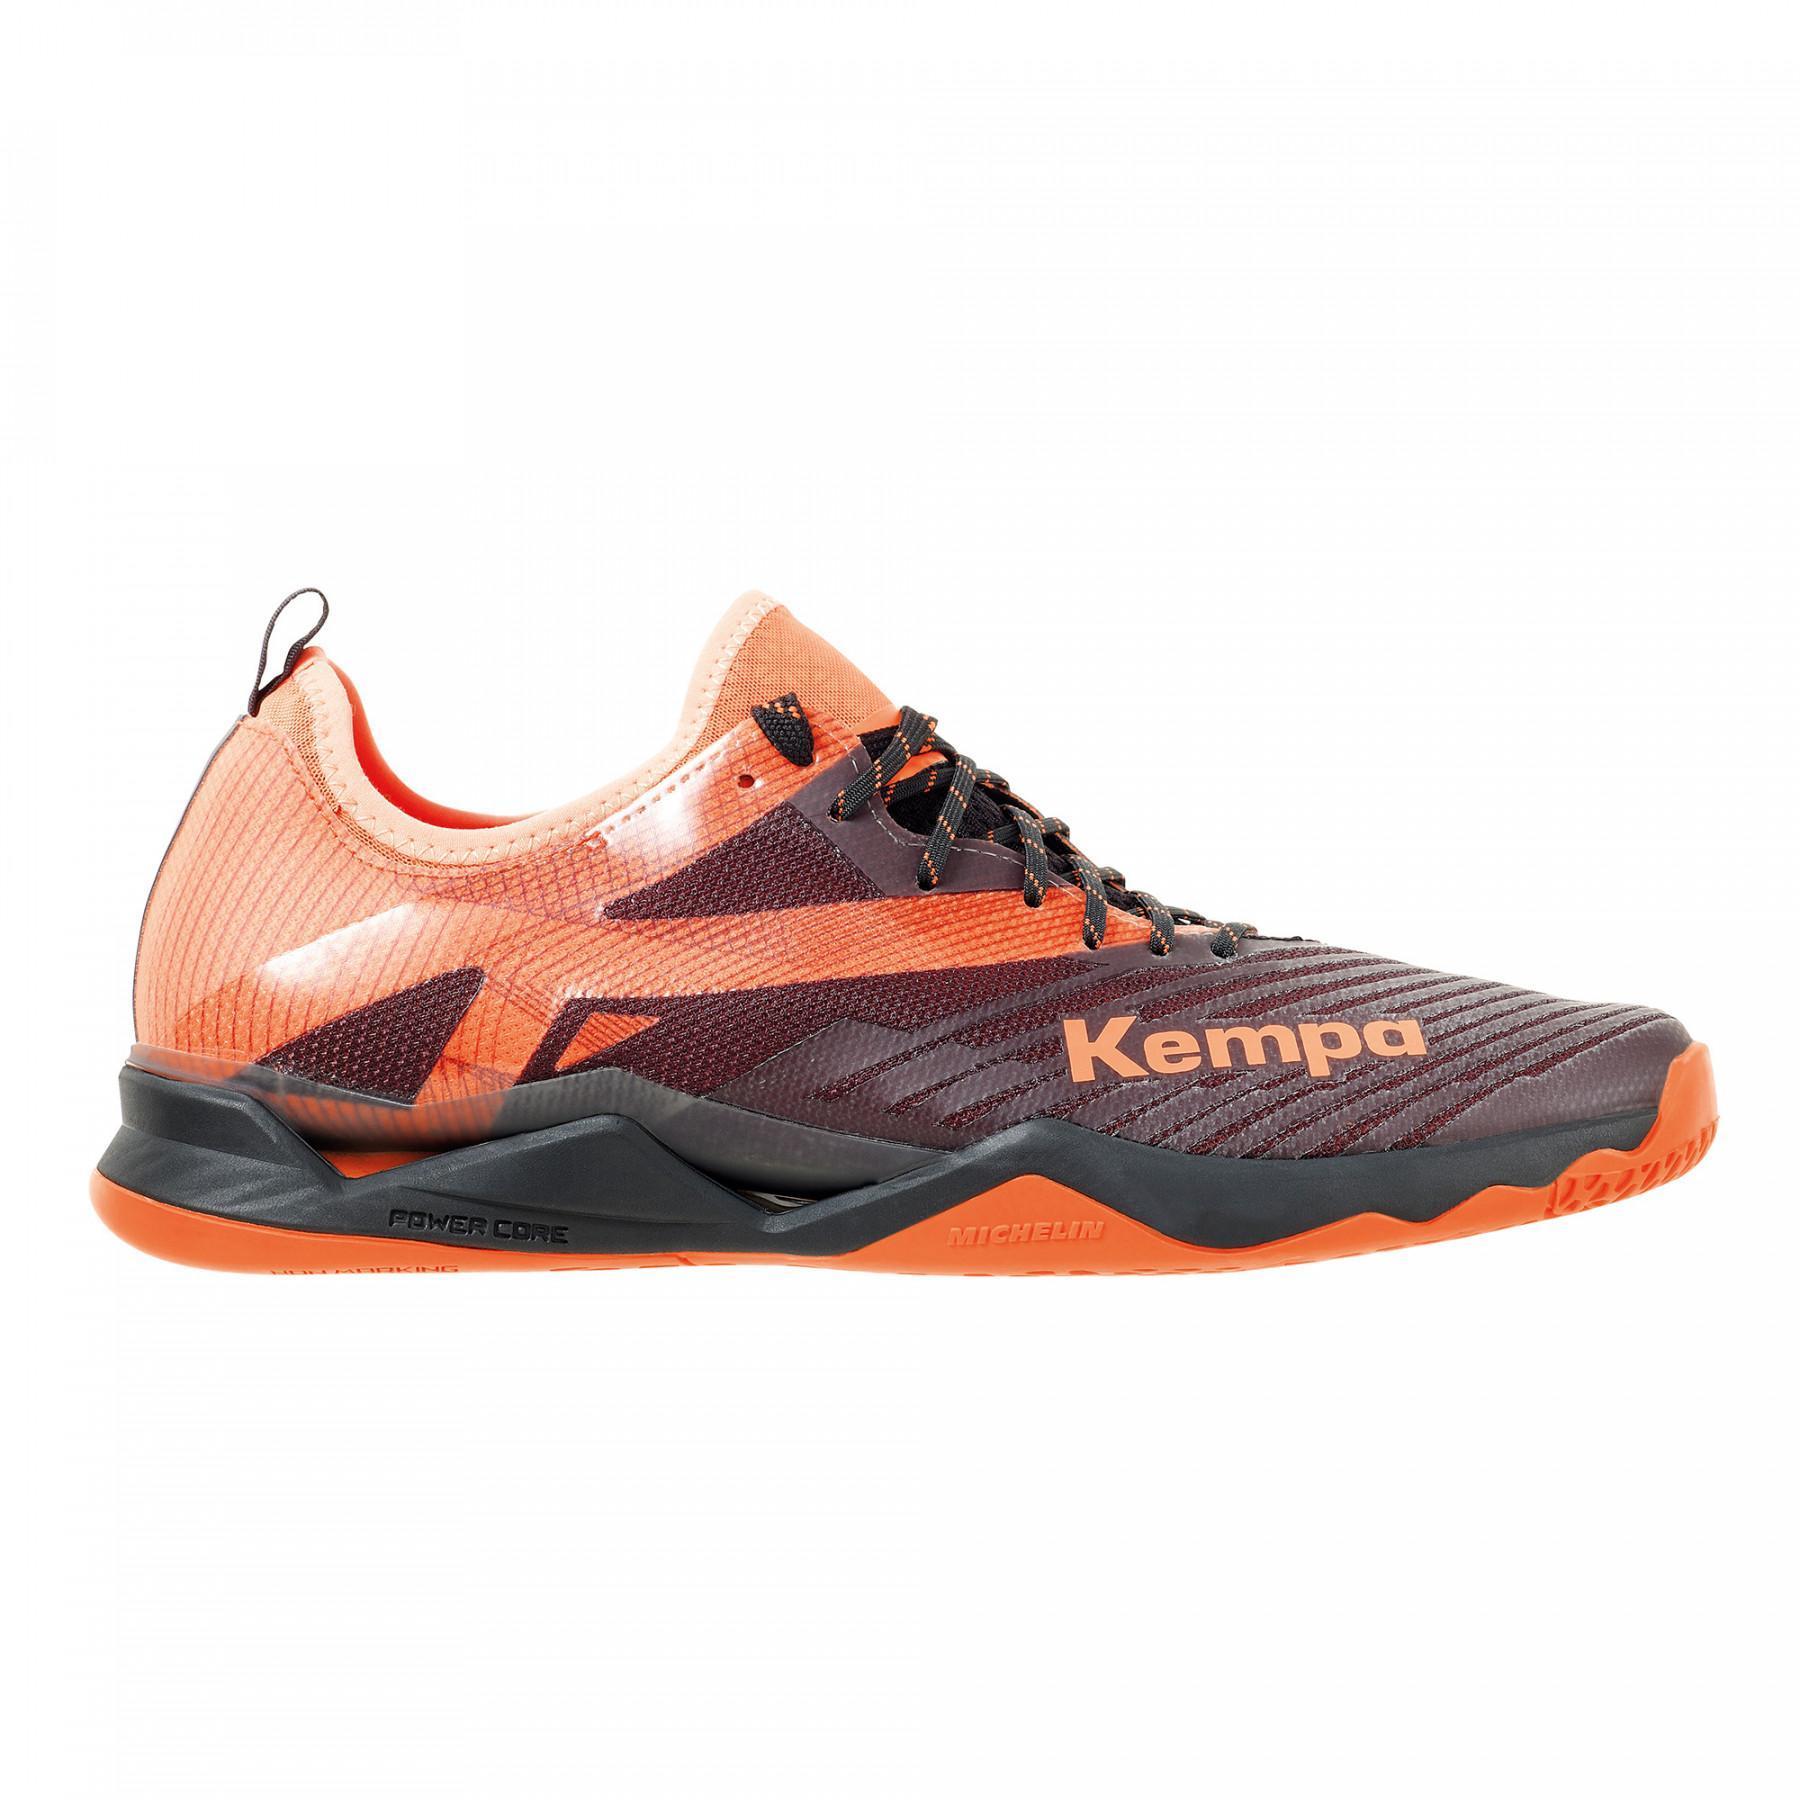 Schuhe Kempa Wing Lite 2.0